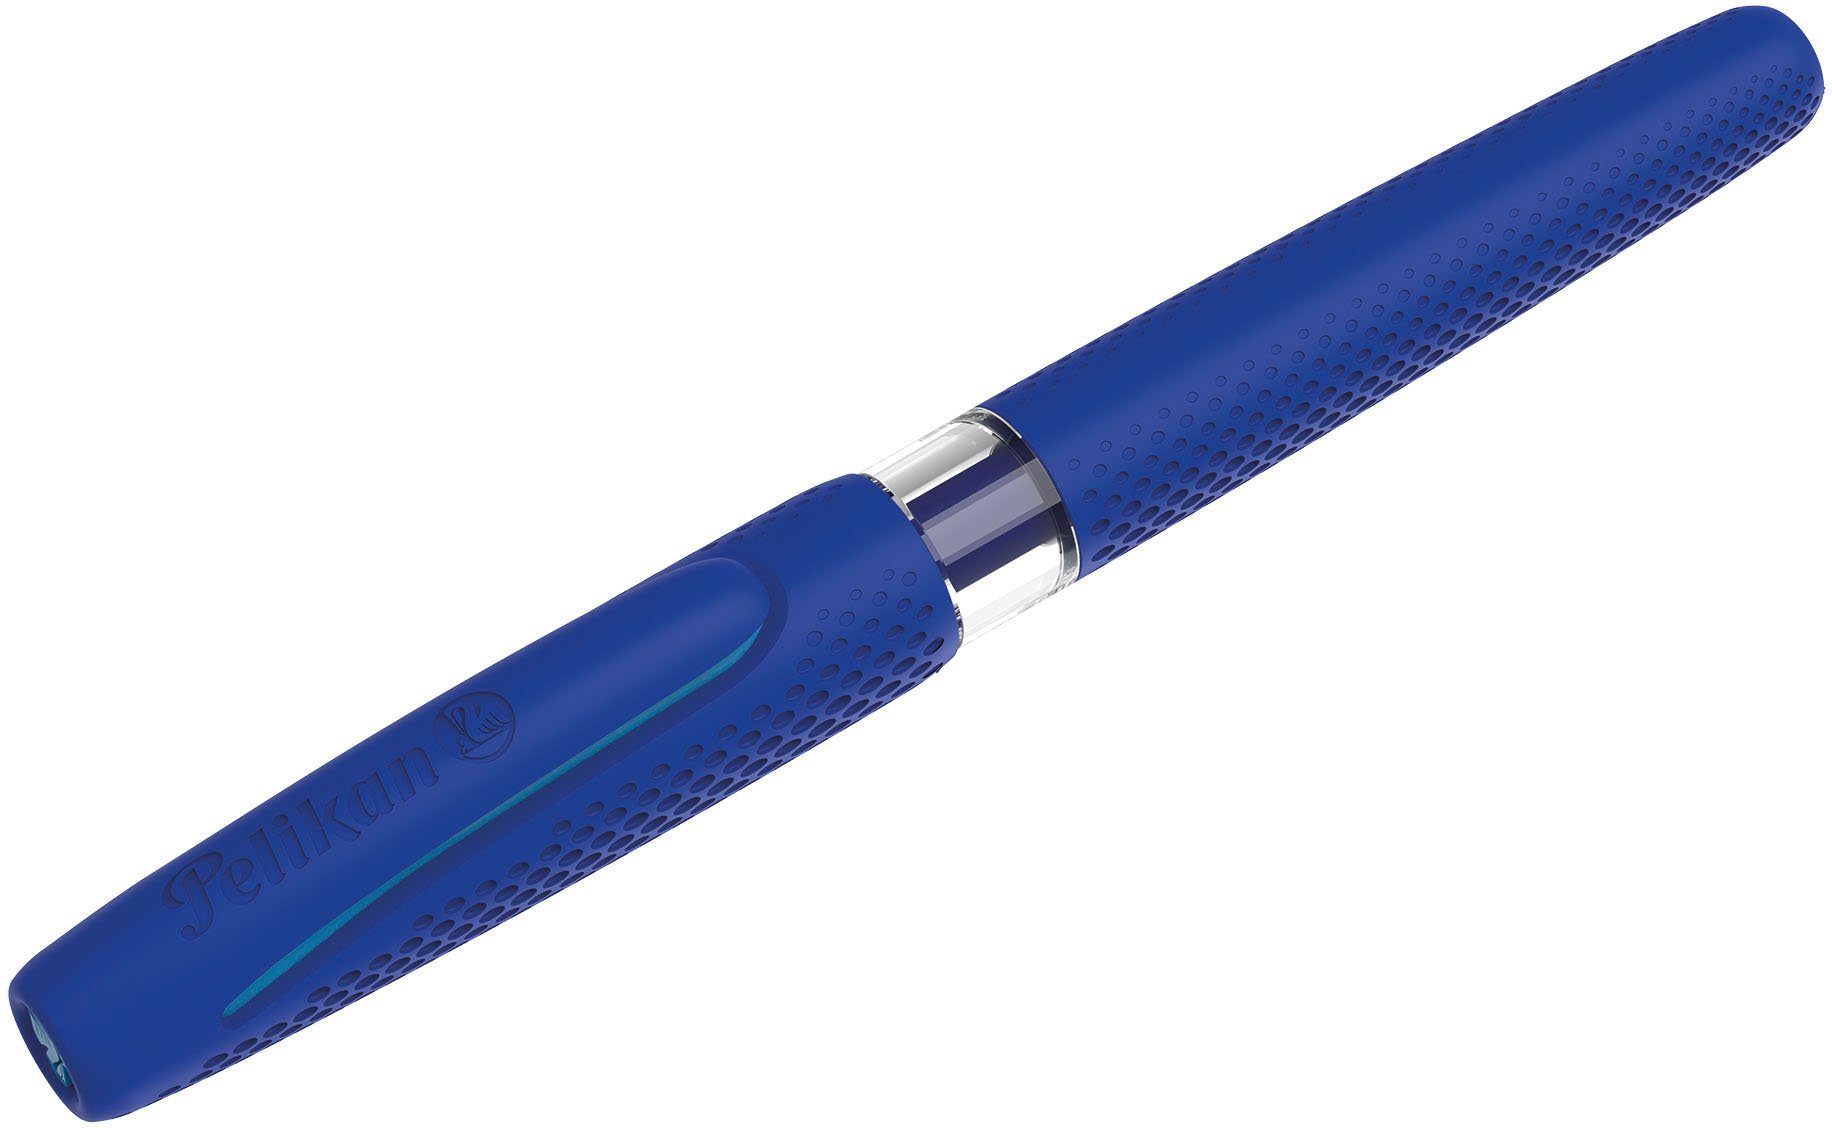 Pelikan Made in Soft-Touch-Griffzone und M, P475 Mittelfingerentlastung Füllhalter für ilo mit Linkshänder; Germany, Rechts- blau,